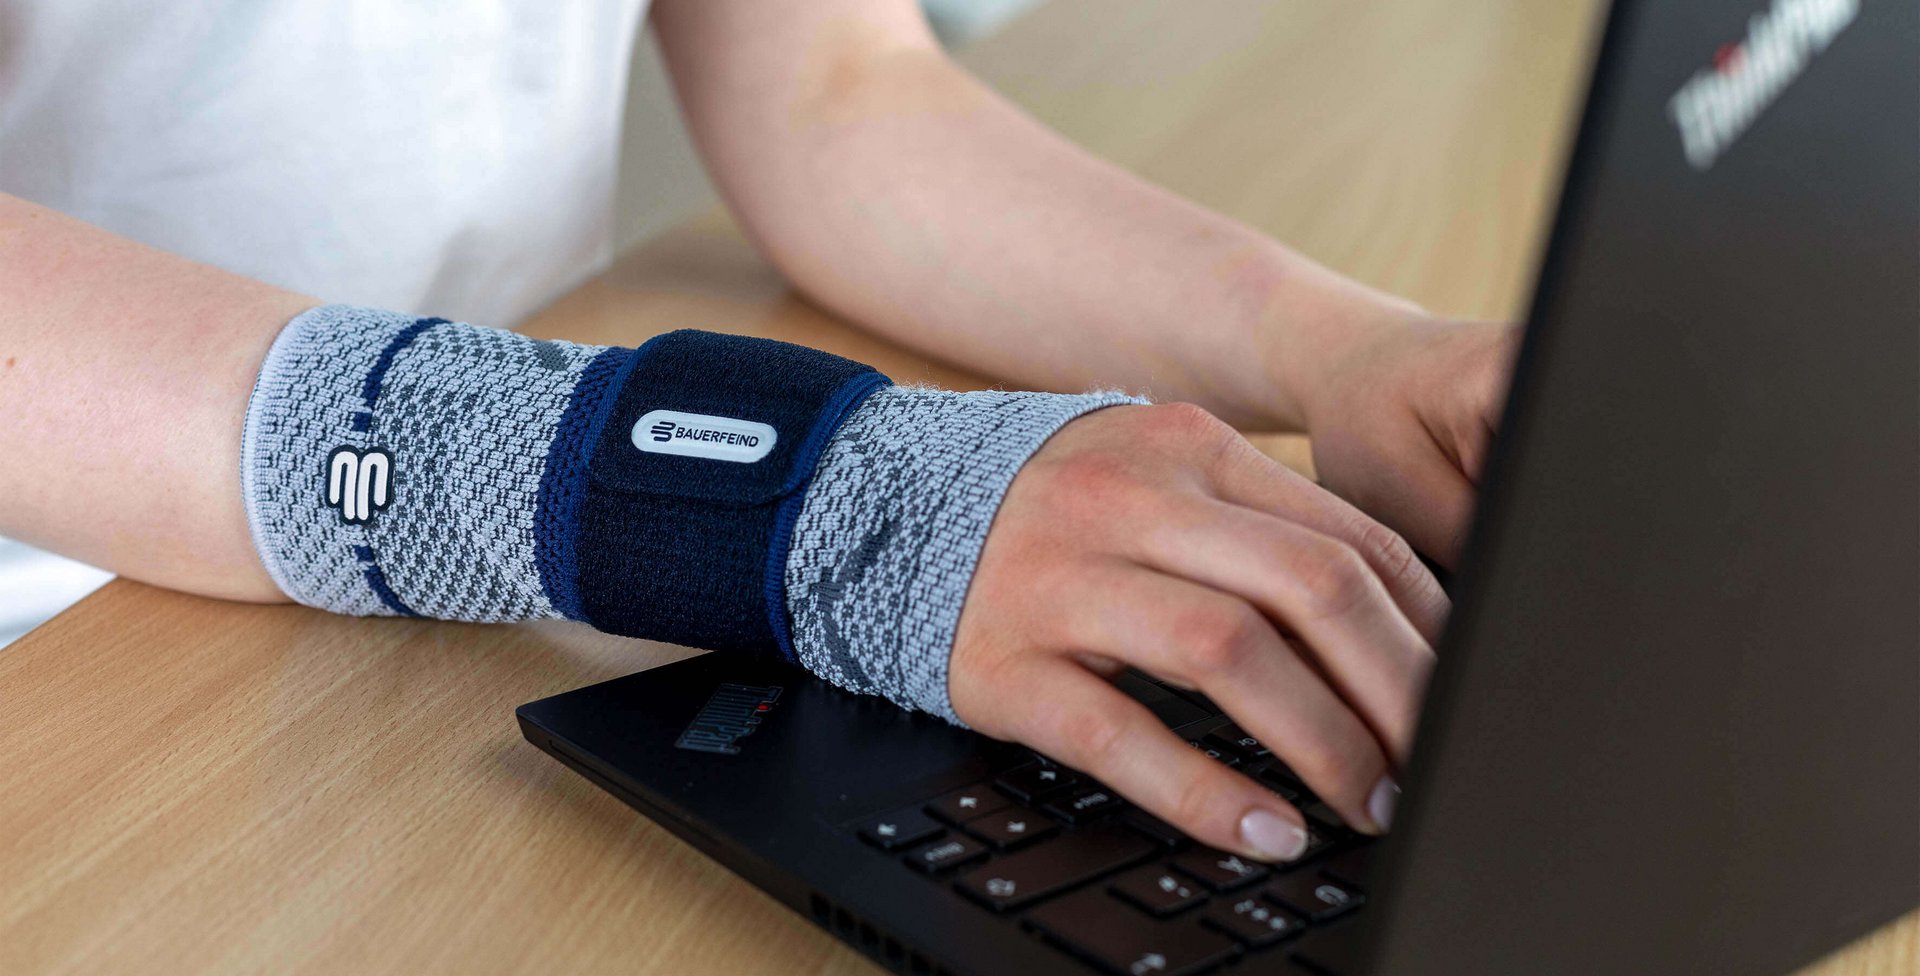 Bildausschnitt einer Frau am Laptop, die am rechten Handgelenk eine ManuTrain Bandage von Bauerfeind trägt. Diese bietet Unterstützung bei Mausarm-Beschwerden.